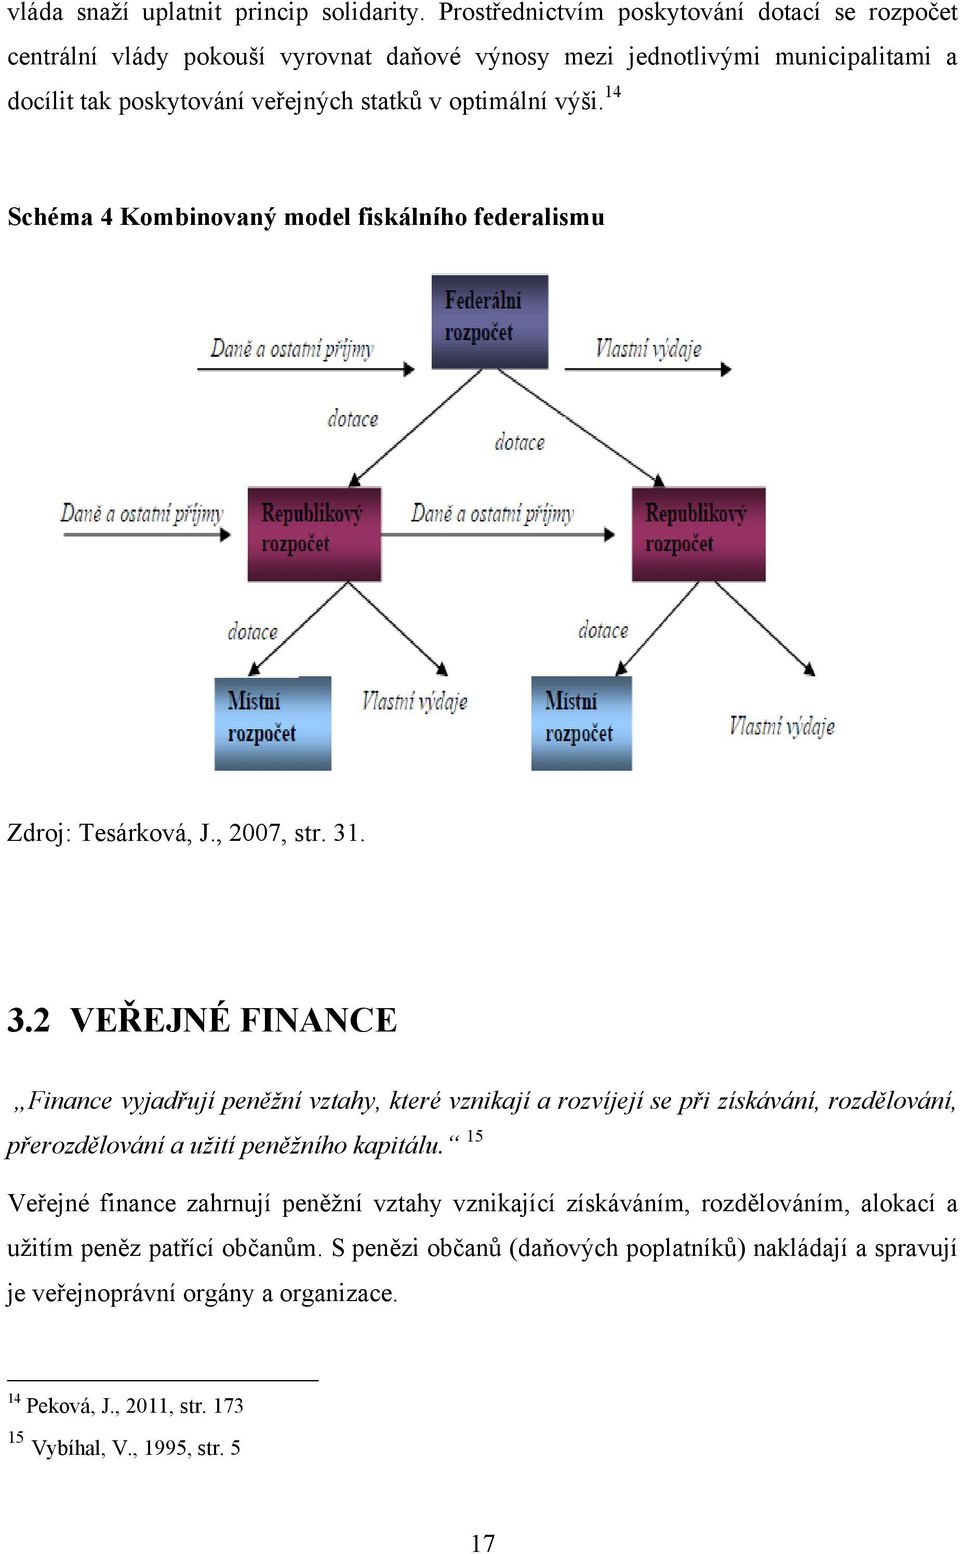 14 Schéma 4 Kombinovaný model fiskálního federalismu Zdroj: Tesárková, J., 2007, str. 31